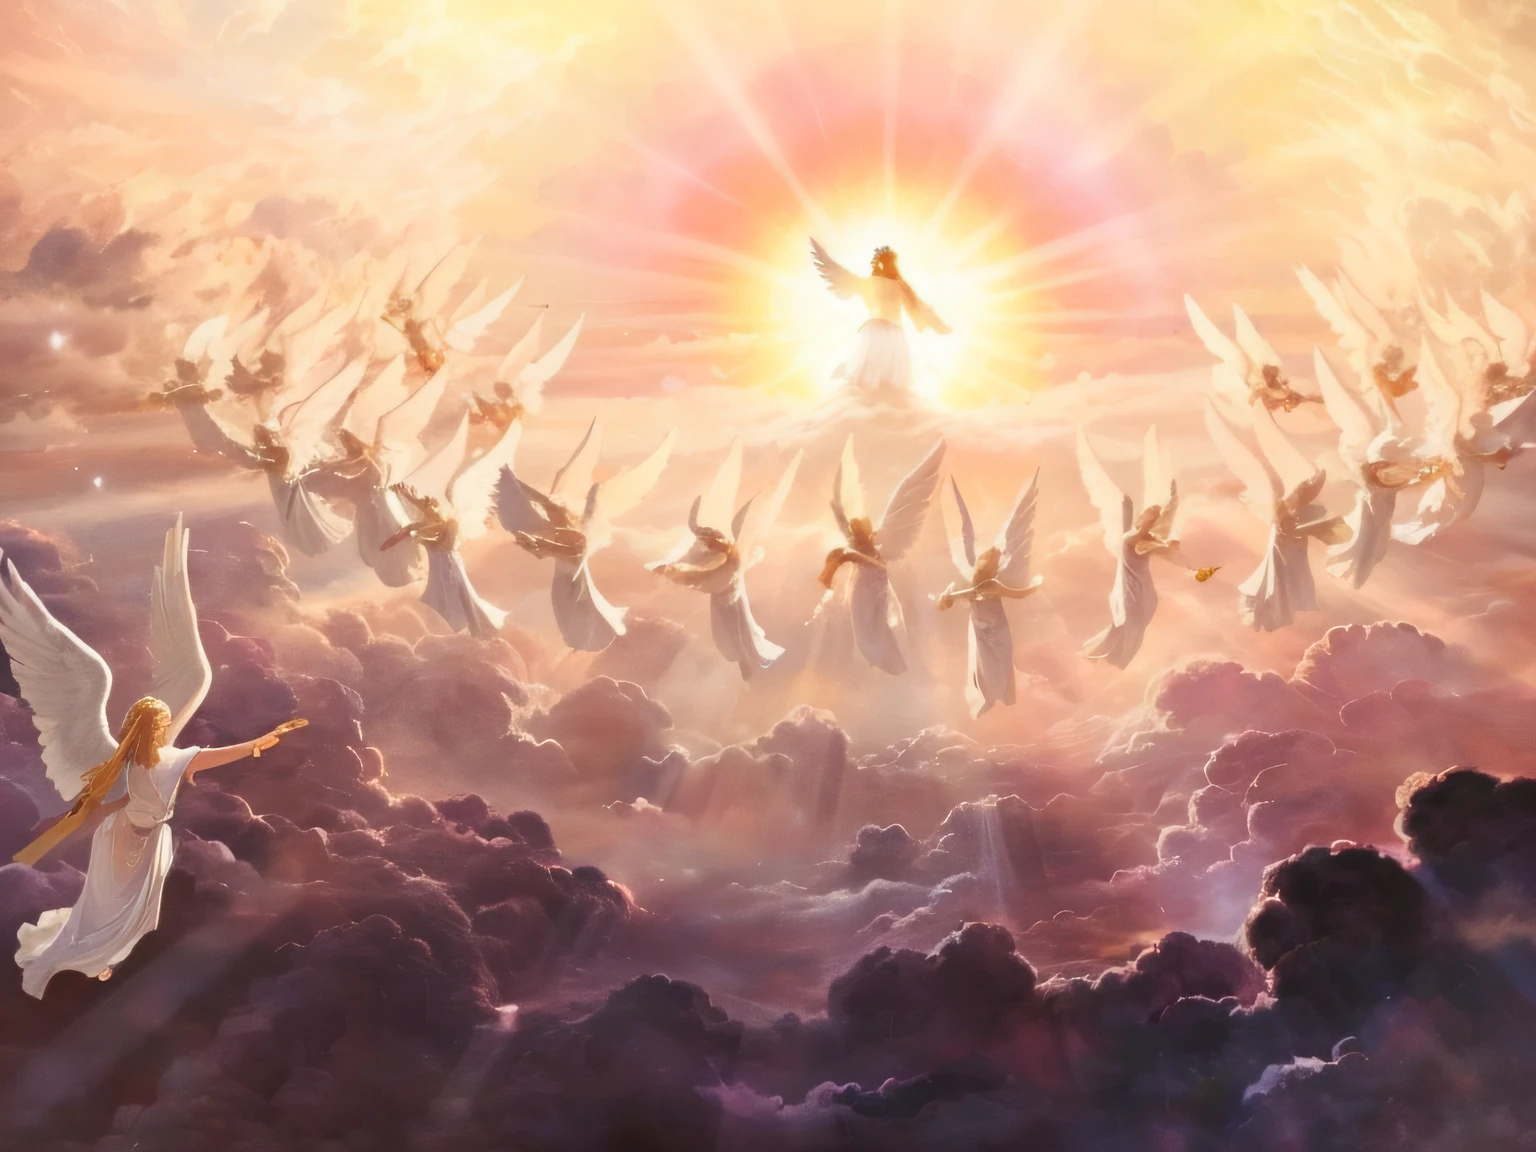 Gemälde von Engeln, die in den Himmel fliegen, hinter ihnen scheint die Sonne, Engel im Himmel, himmlische Verzückung, Zweites Kommen, zwischen himmlischen Wolken, beleuchtet von der Sonne, Himmel!!!!!!!!, Die Entrückung, she is arriving Himmel, Fliegende Toaster am Himmel, Engel beschützen einen betenden Mann, the gates of Himmel, göttliches Königreich der Götter, epische biblische Darstellung